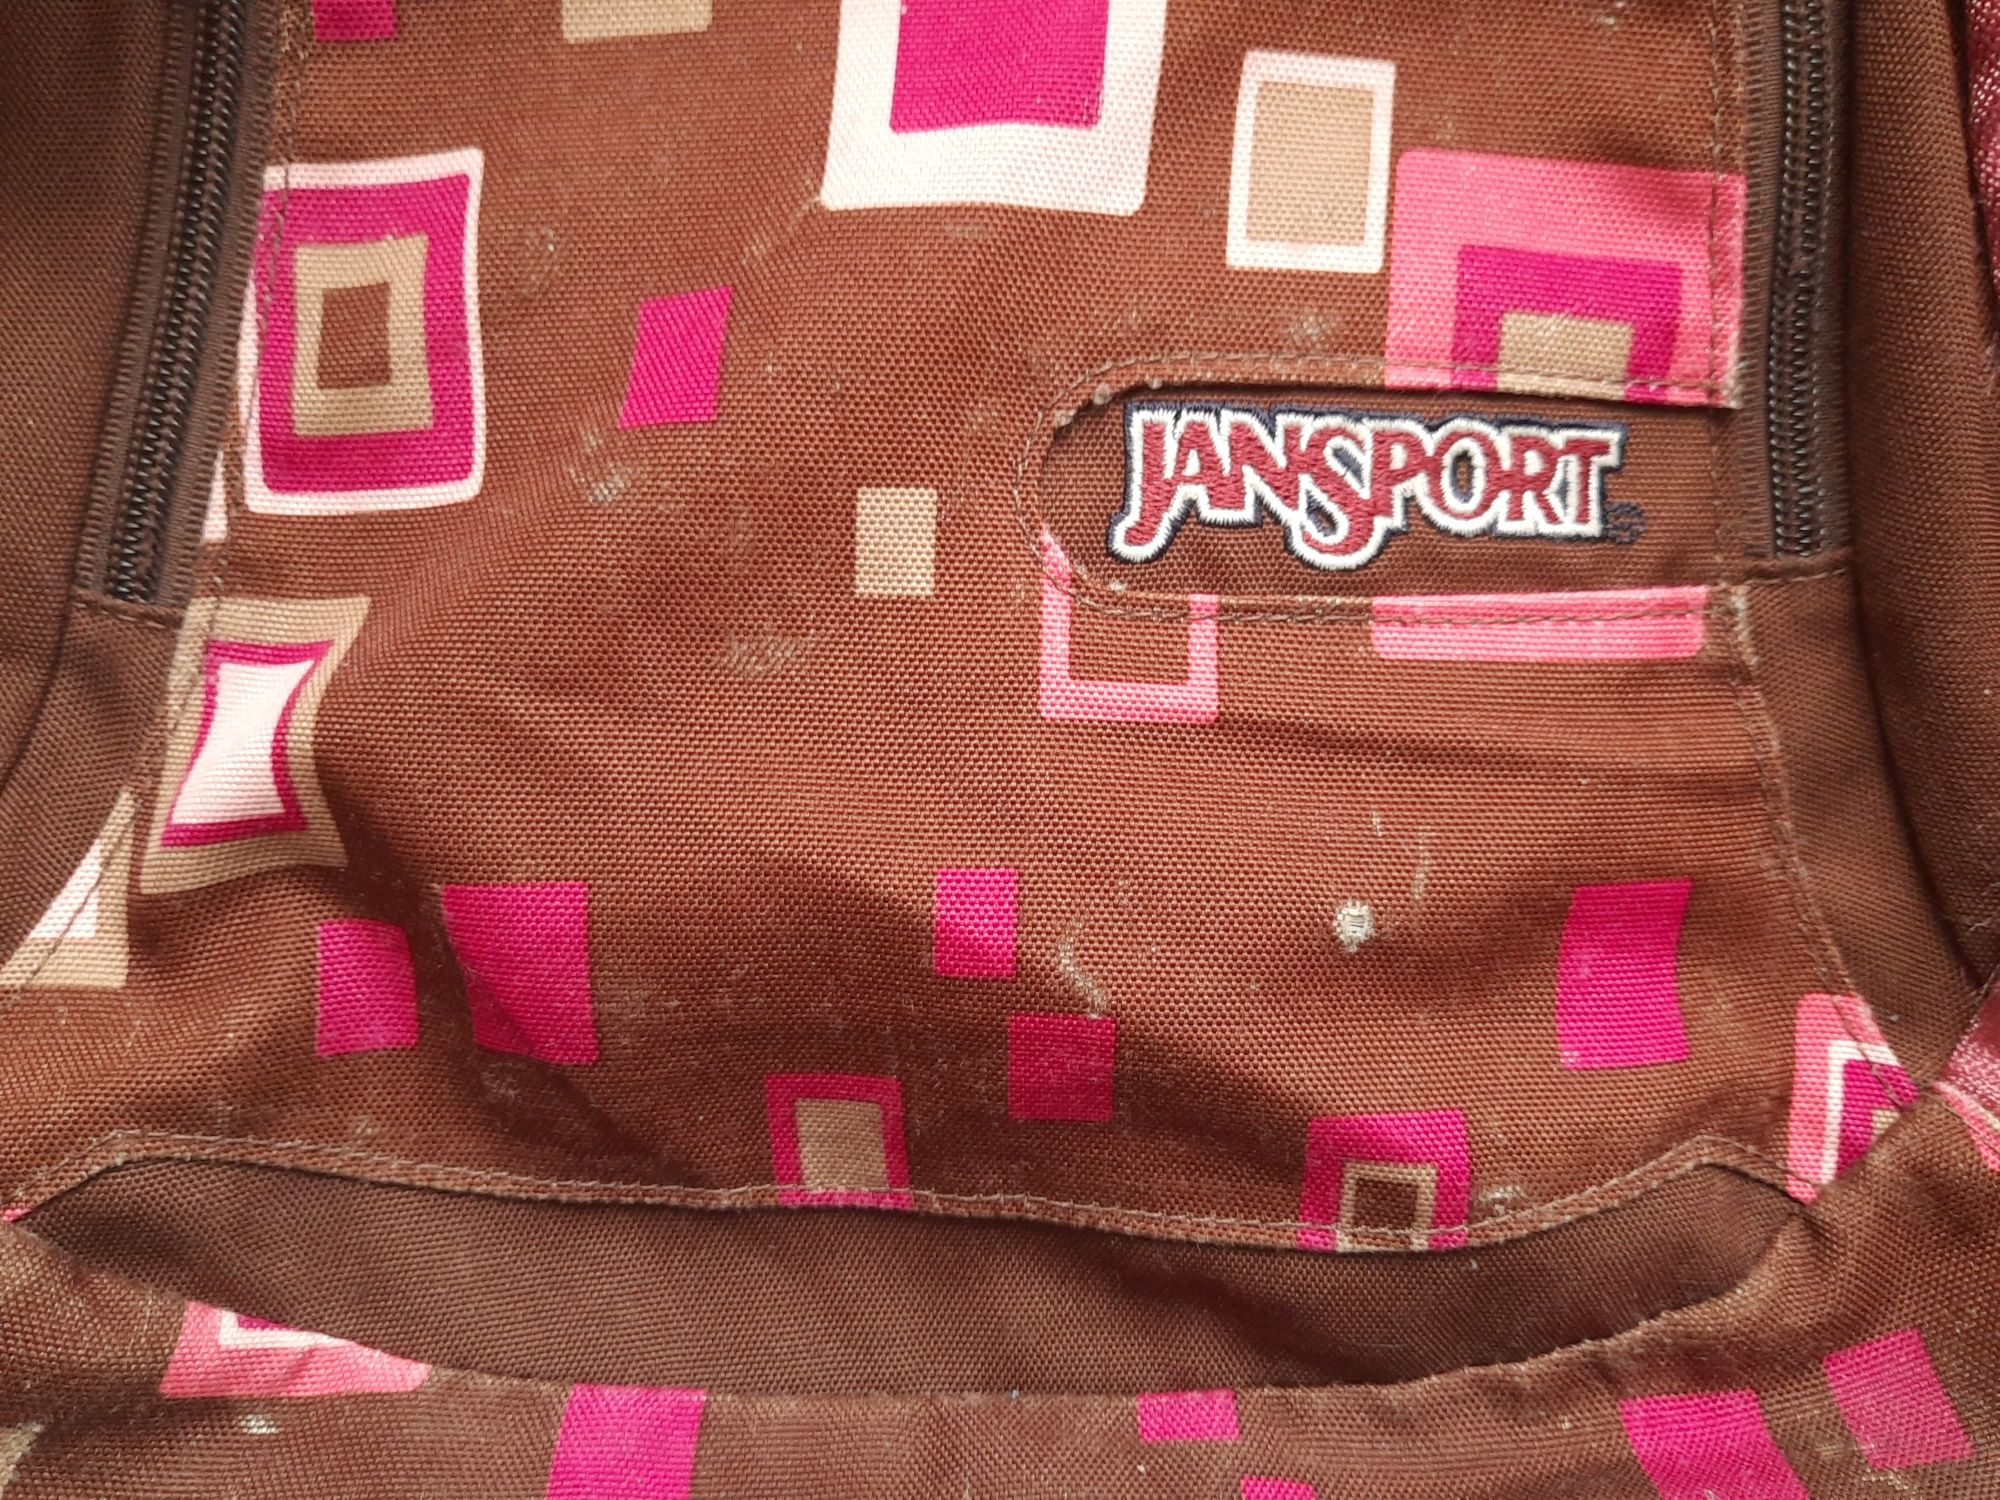 Plecak JanSport ok 30L wycieczkowy turystyczny damski (jak dakine itp)